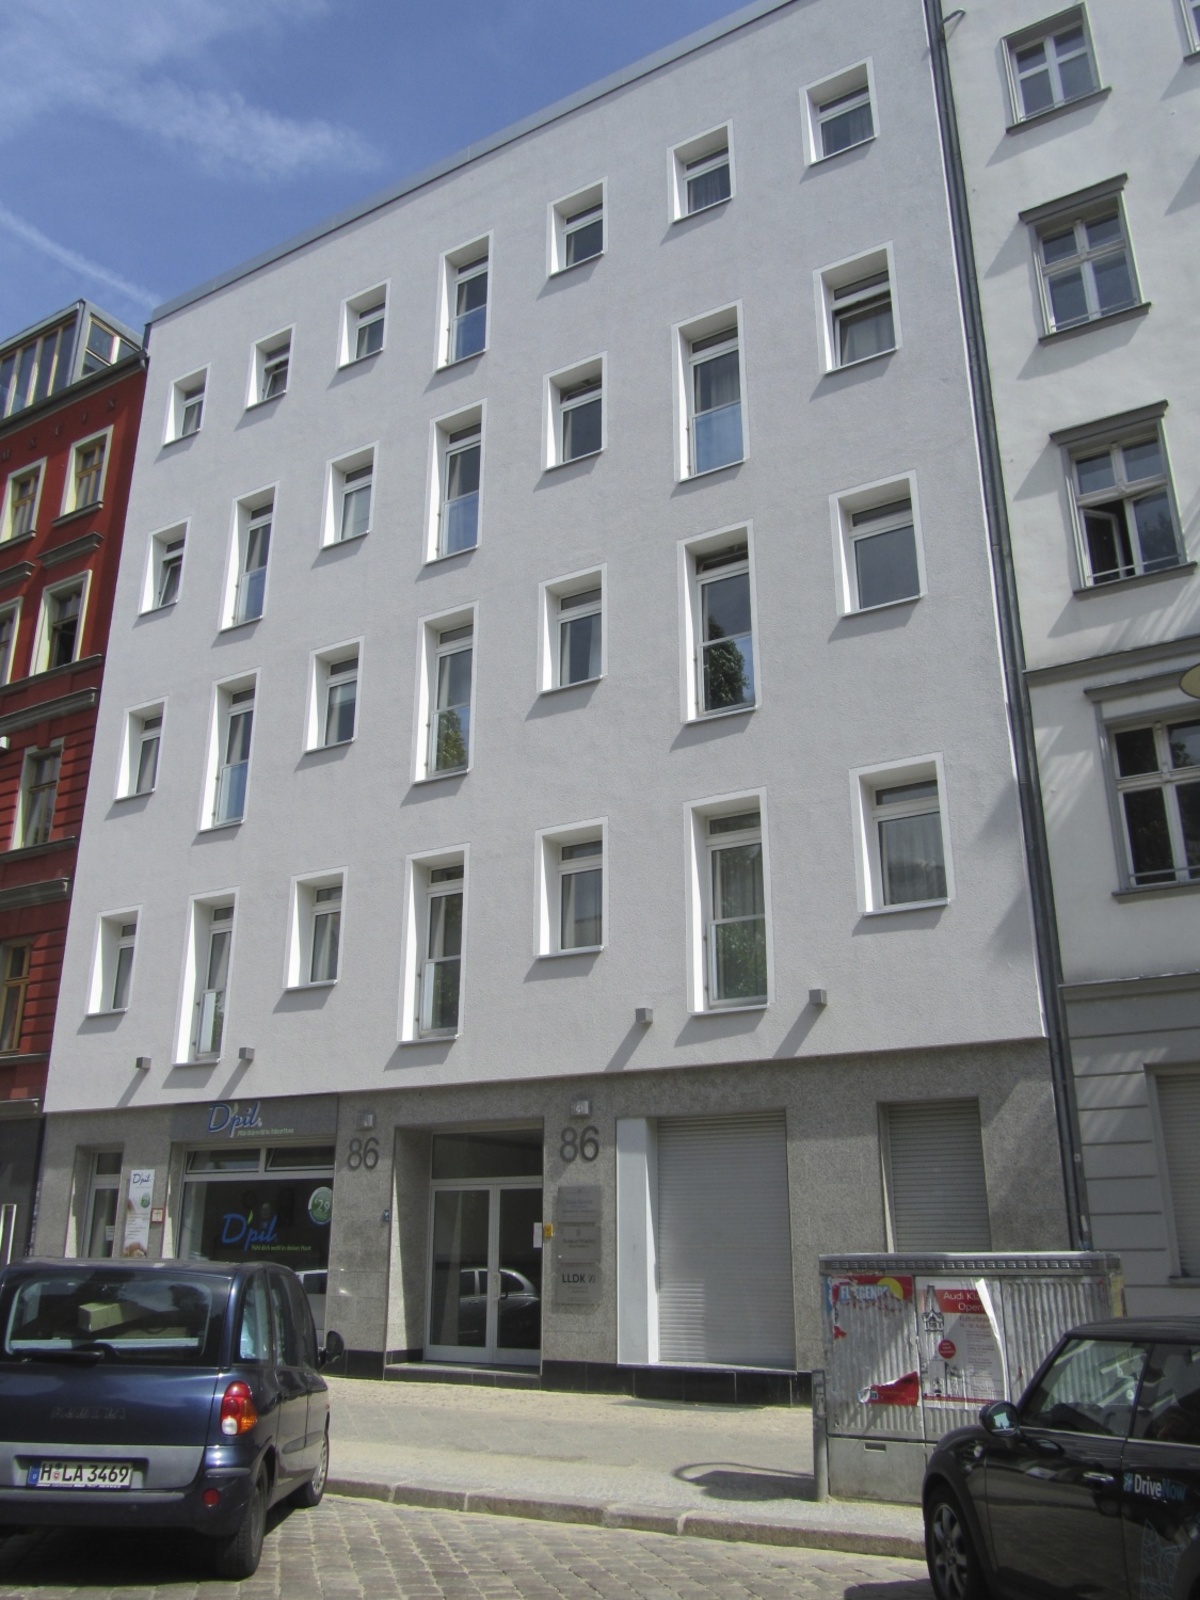 Office tQWf Knaackstraße 86 in Berlin, Prenzlauer Berg